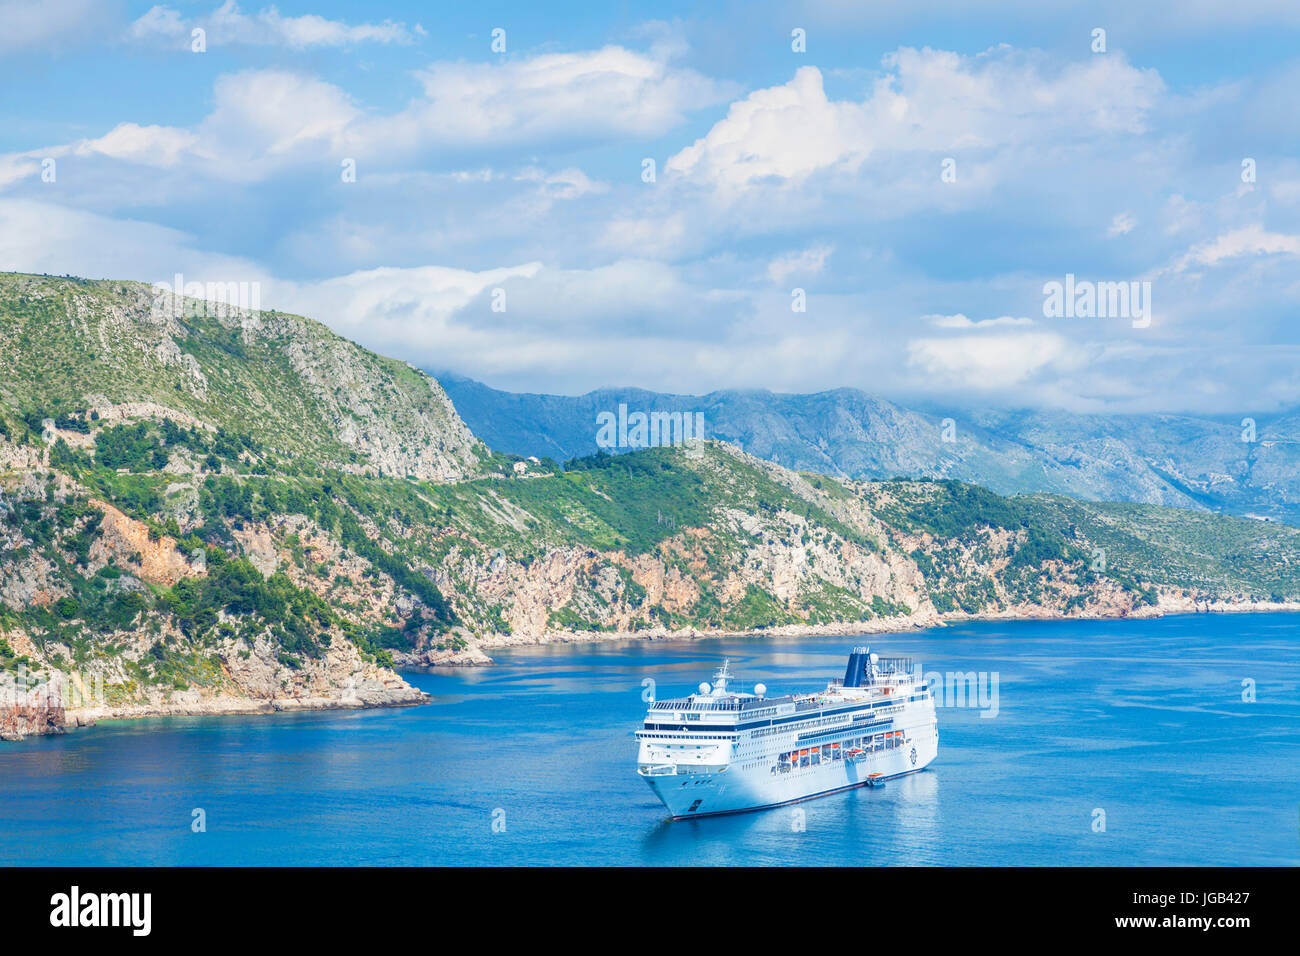 Croatia Dubrovnik Croacia costa dálmata crucero vela el litoral dálmata hacia el mar Adriático Dubrovnik Croacia adriática Foto de stock